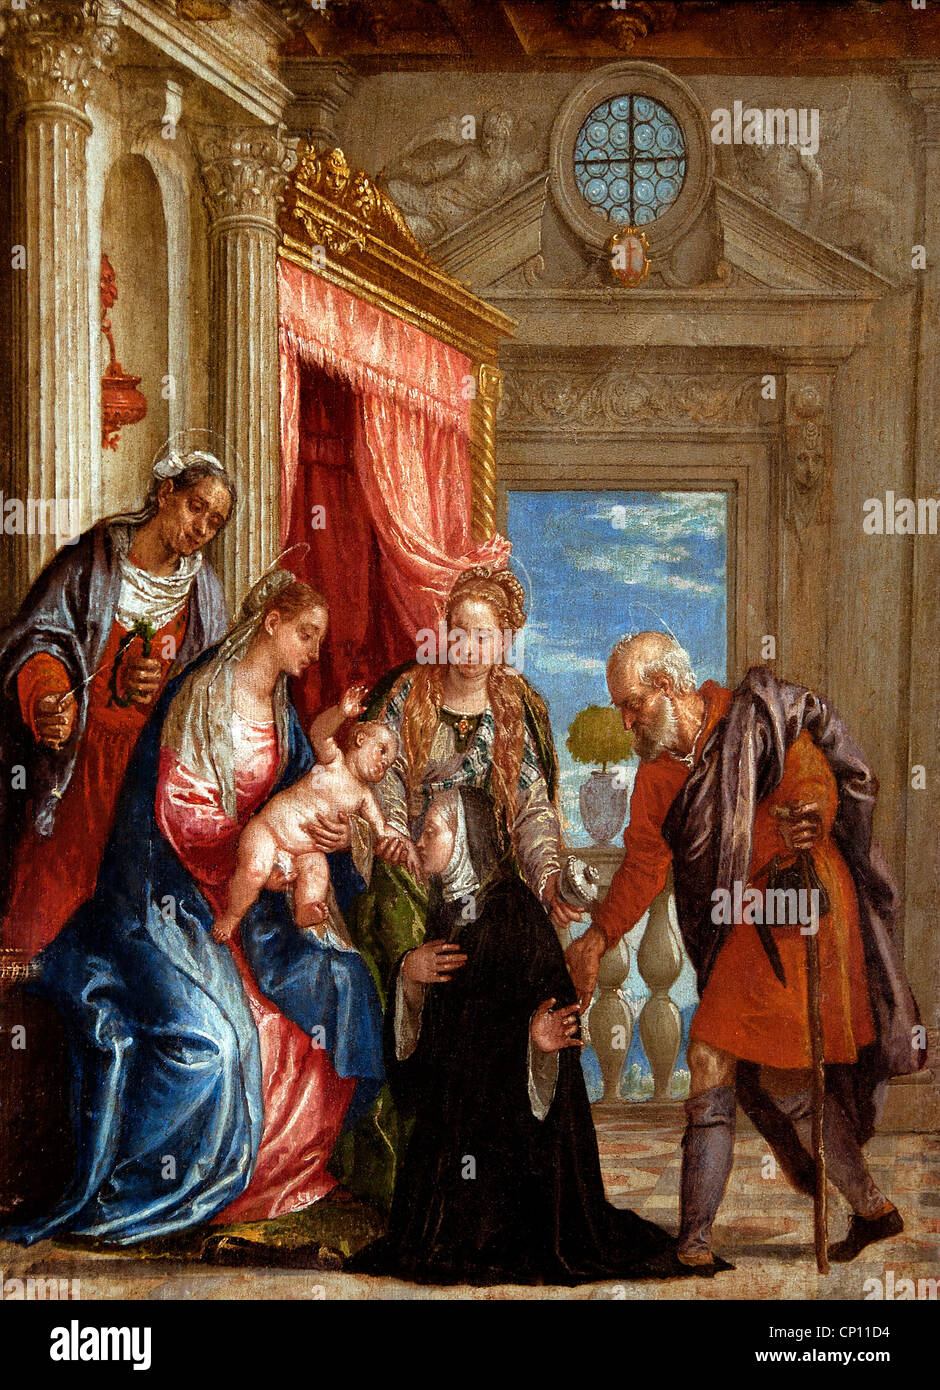 La Sainte Famille et Trois Saintes - die Heilige Familie und drei heilige 1580 Atelier de Paolo CALIARI, Dit BARRAULT 1528-1588 Italien Stockfoto